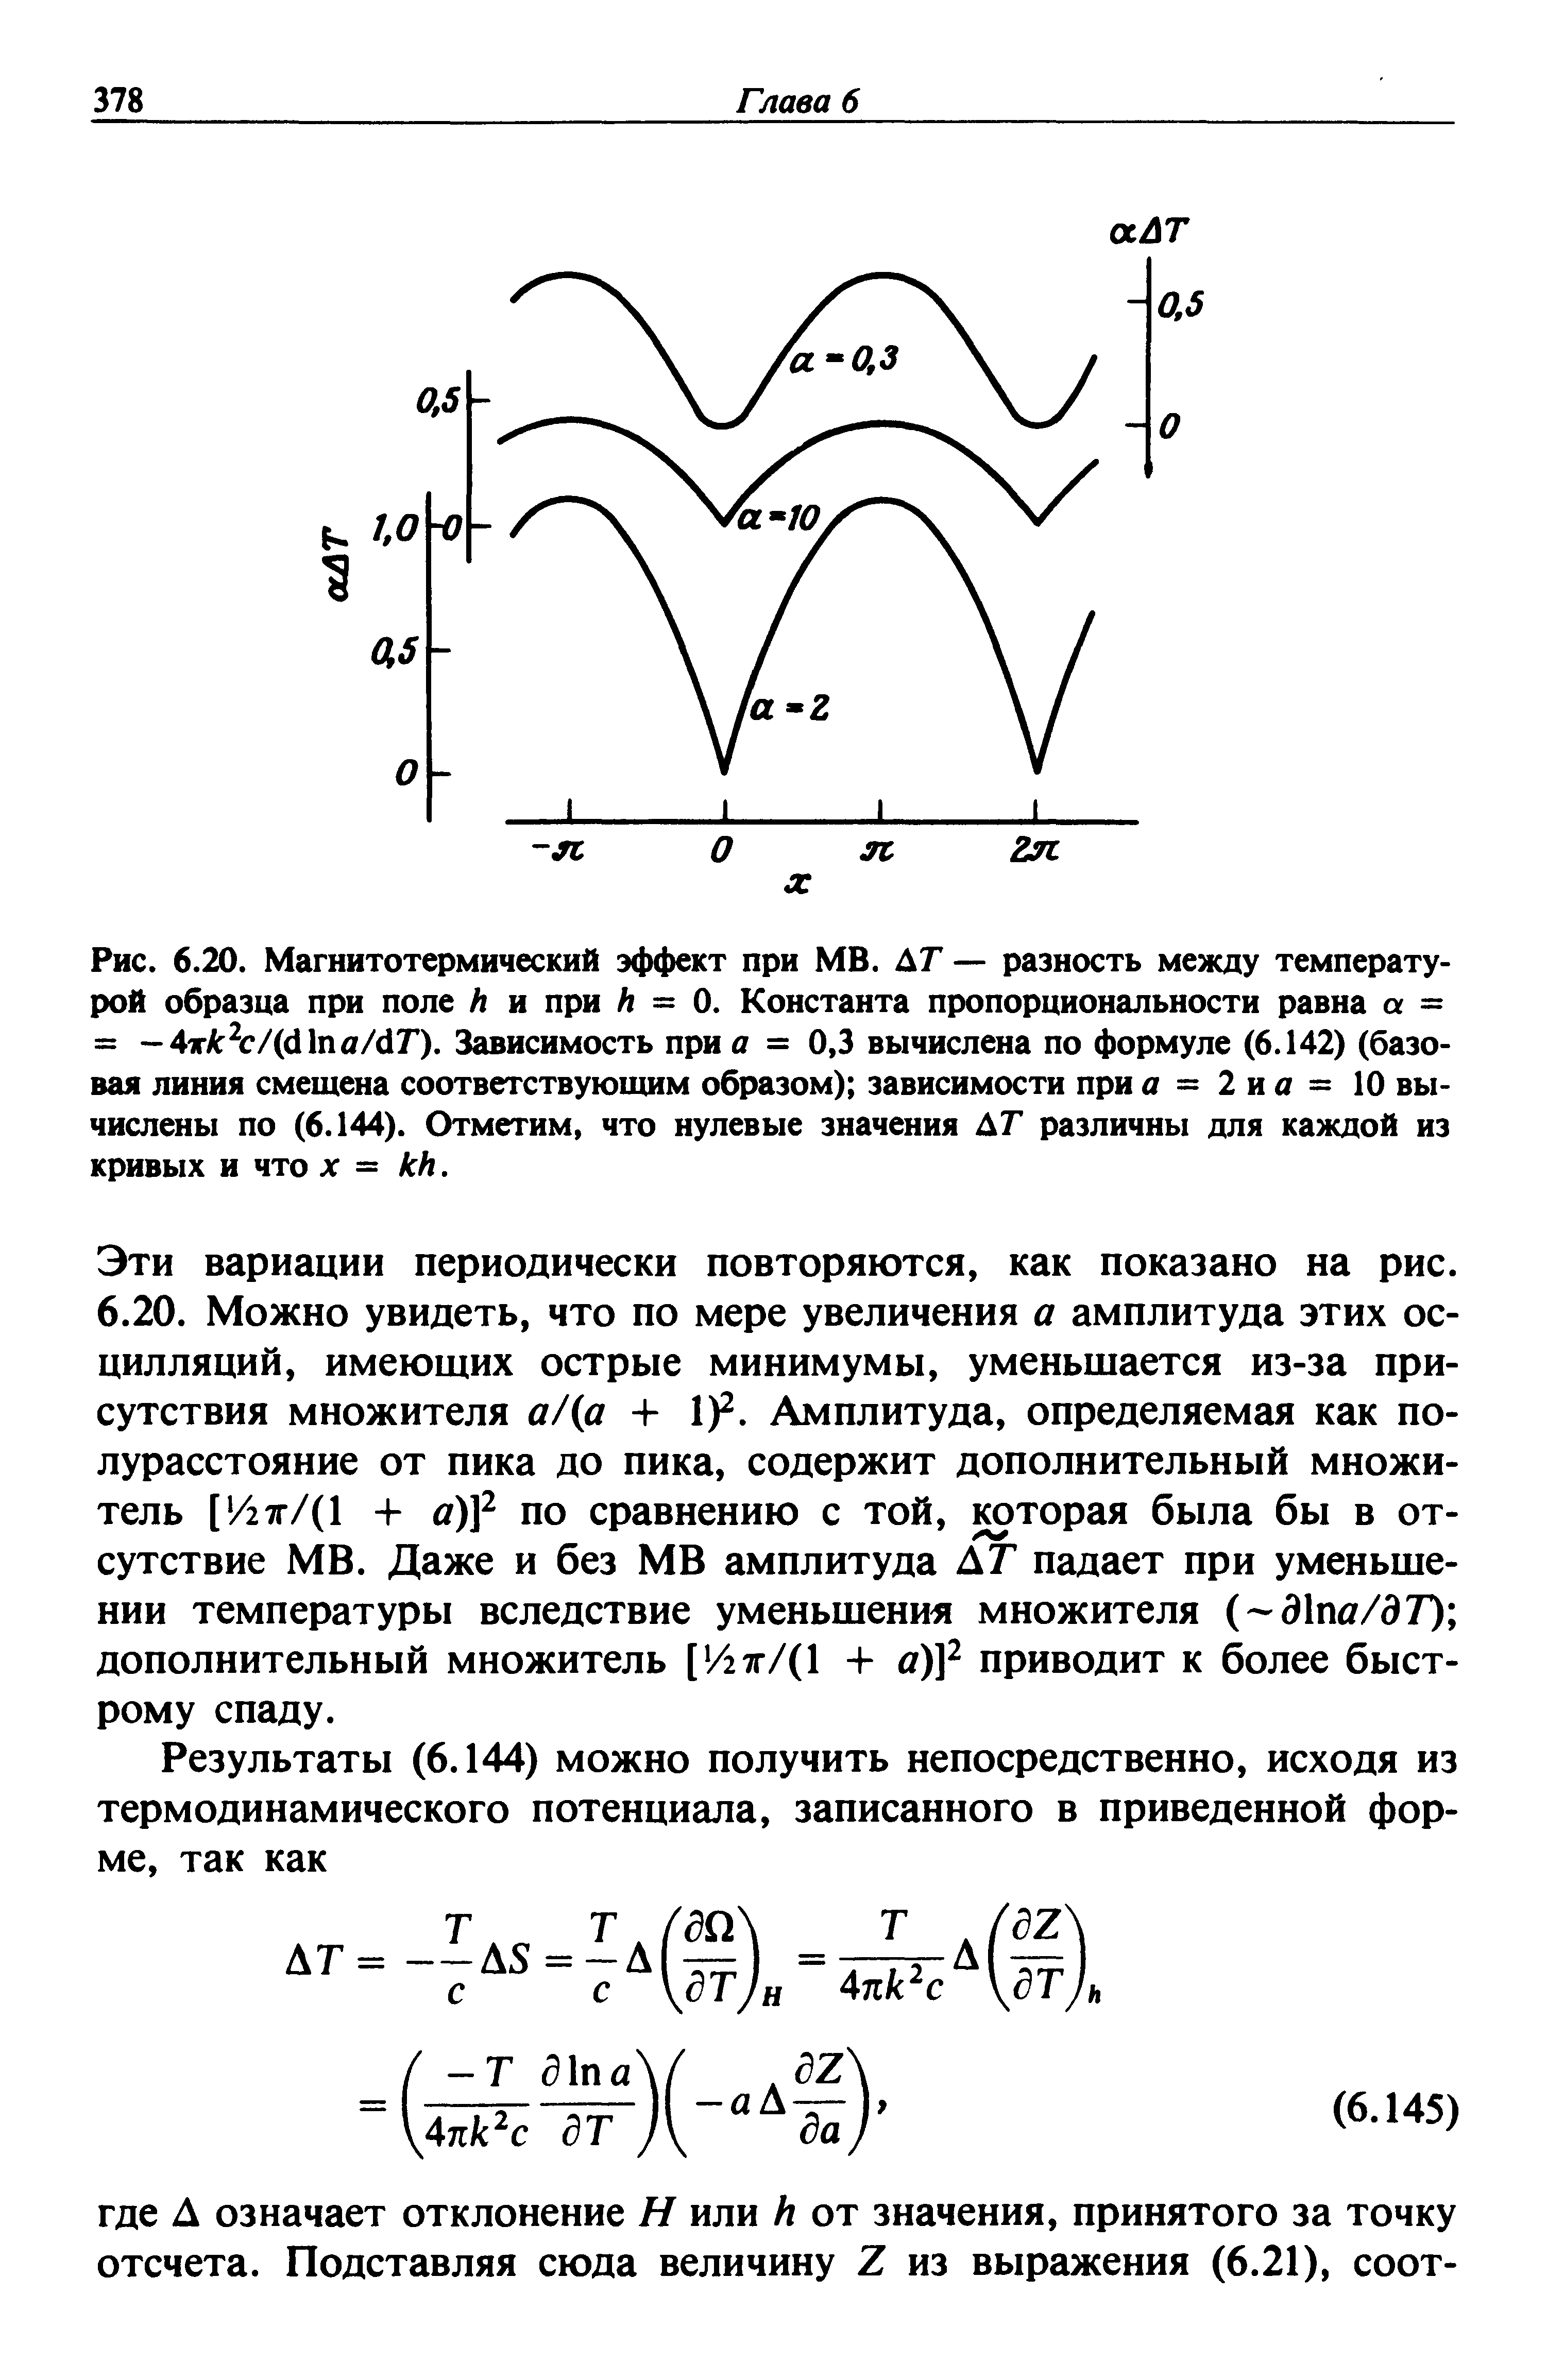 Рис. 6.20. Магнитотермический эффект при МВ. ДГ — разность между температурой образца при поле И и при И = 0. Константа пропорциональности равна а = = -4хАг с/(с11па/с1Г). Зависимость при а = 0,3 вычислена по формуле (6.142) (базовая линия смещена соответствующим образом) зависимости при а = 2 и а = 10 вычислены по (6.144). Отметим, что нулевые значения АТ различны для каждой из кривых и что X = кк.
